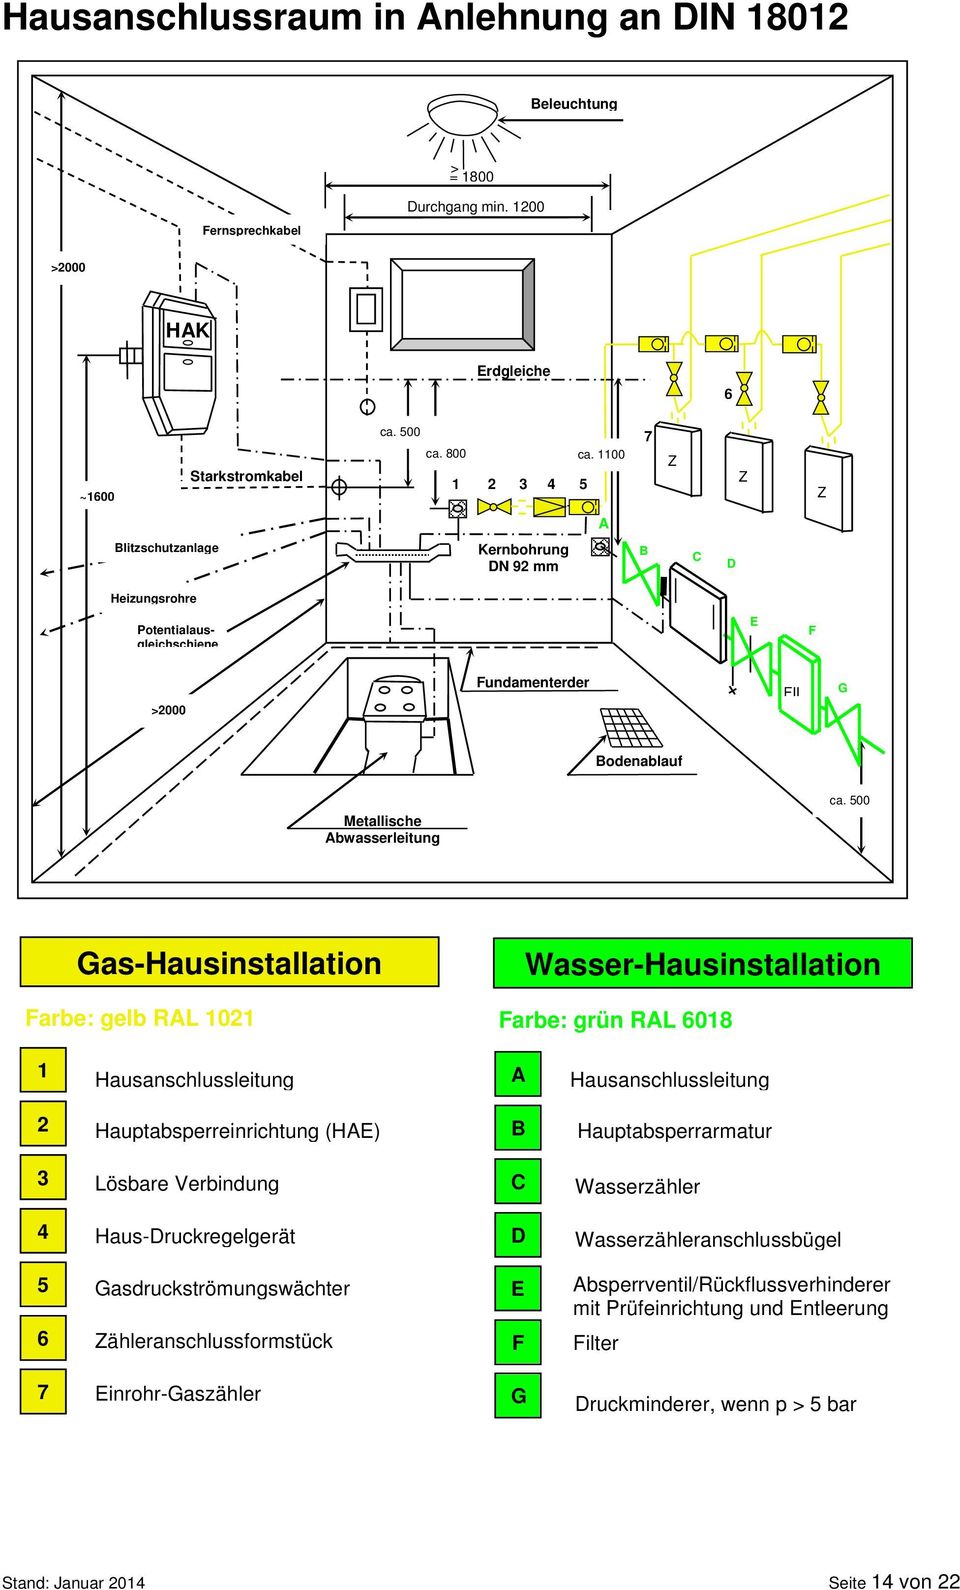 500 Gas-Hausinstallation Farbe: gelb RAL 1021 Wasser-Hausinstallation Farbe: grün RAL 6018 1 Hausanschlussleitung A Hausanschlussleitung 2 Hauptabsperreinrichtung (HAE) B Hauptabsperrarmatur 3